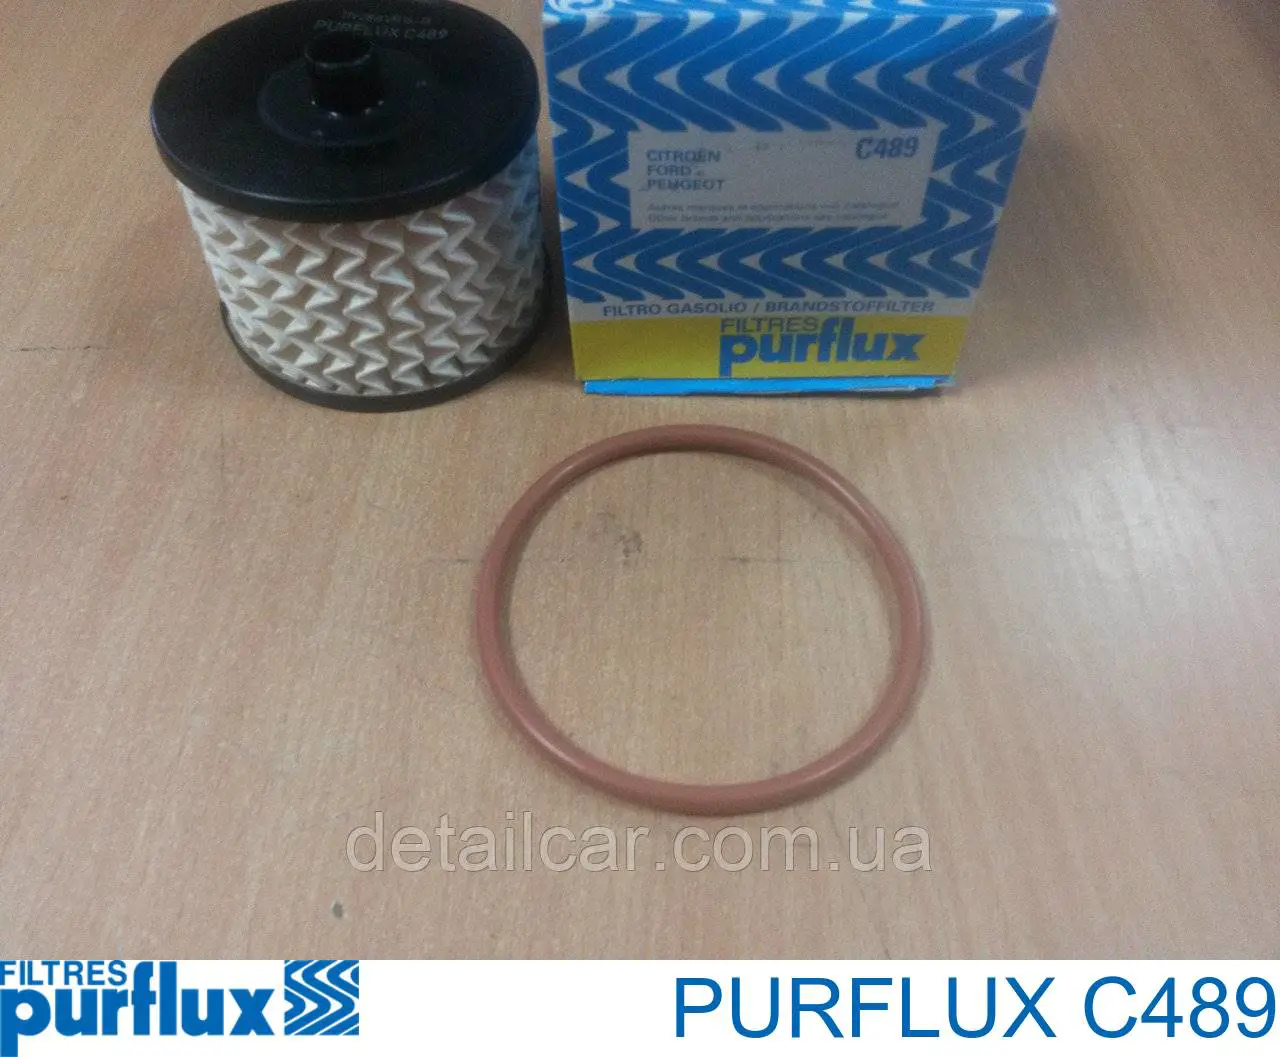 Фильтр топливный Purflux C489